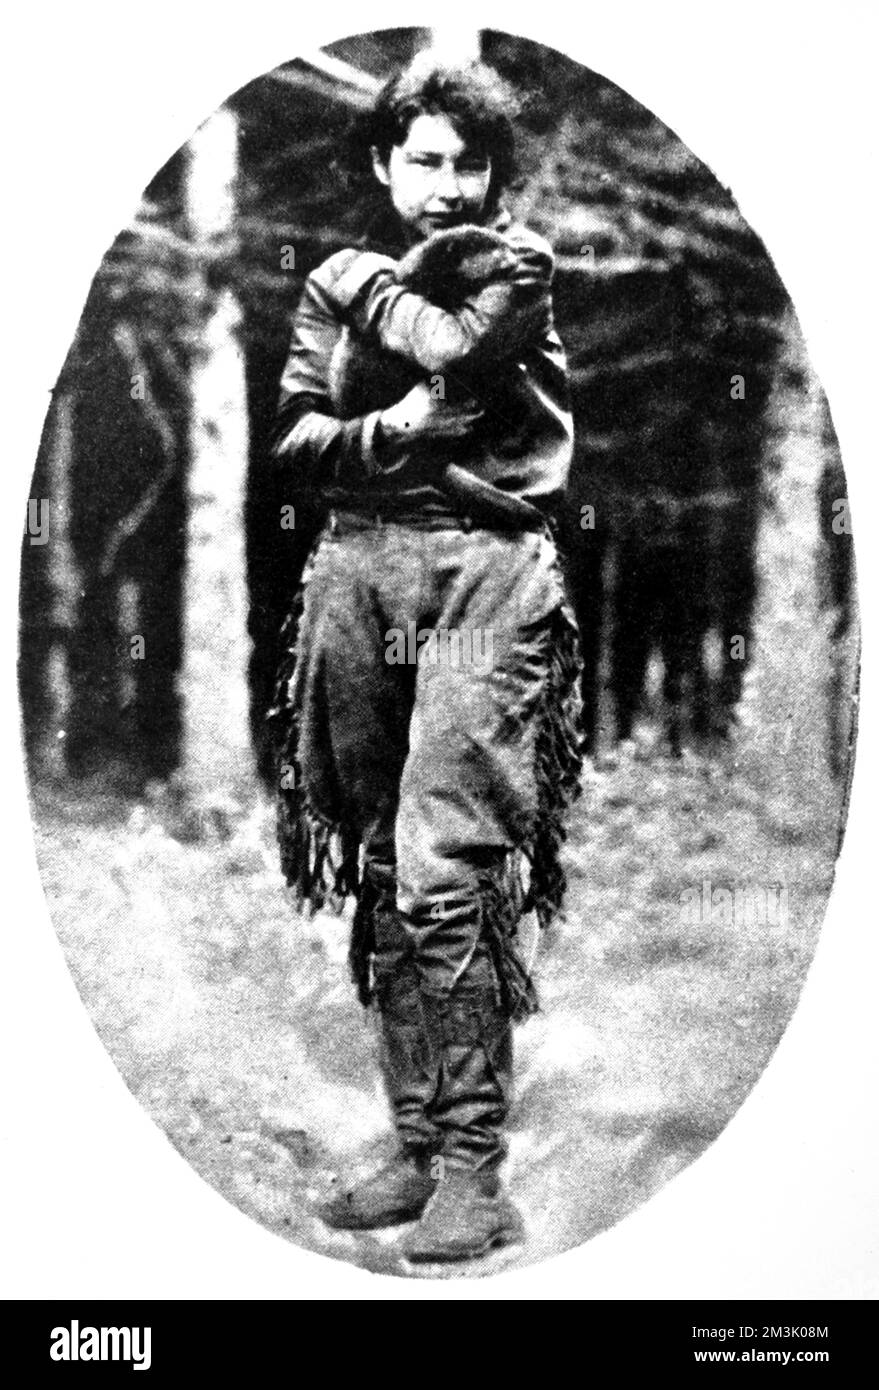 Anahareo war die Ehefrau von Grey Owl, der in einem Gebiet Kanadas, in dem er einst Pelzhändler und Fallensteller war, als Naturschützer bekannt wurde. Datum: 1934 Stockfoto